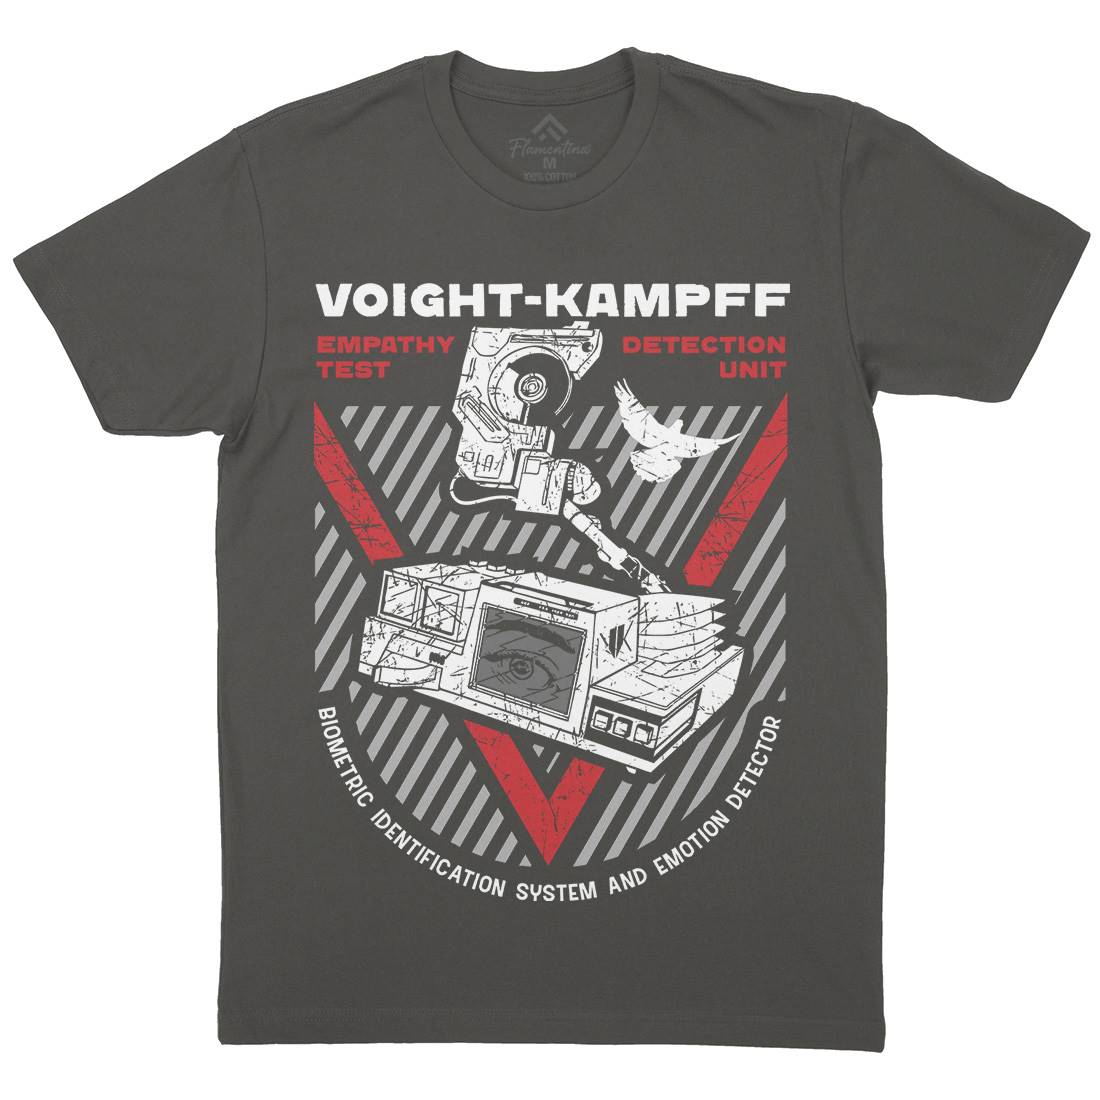 Voight Kampff Mens Organic Crew Neck T-Shirt Space D175